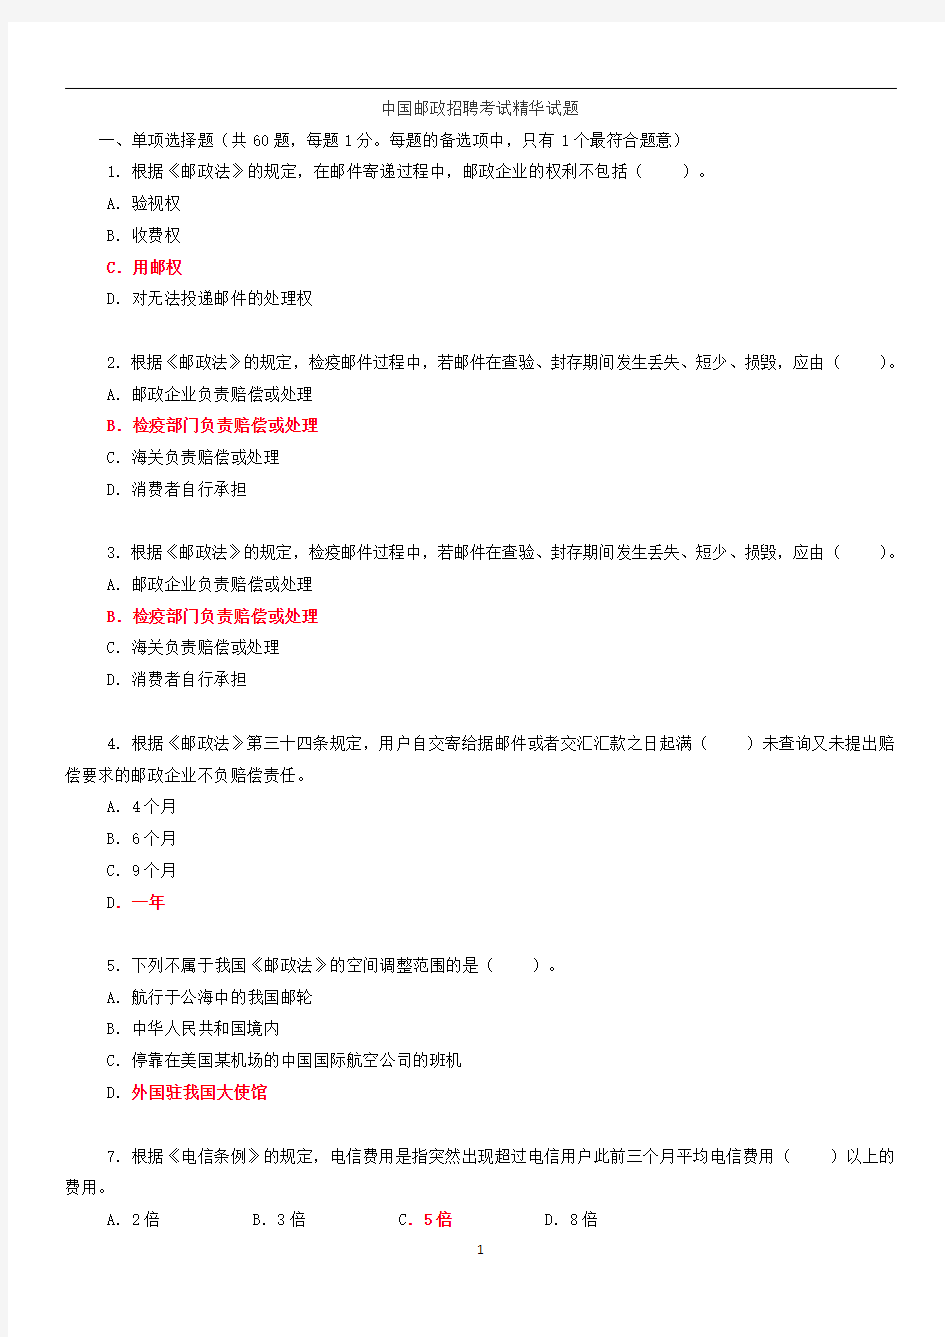 中国邮政 招聘考试试题及答案  总括版